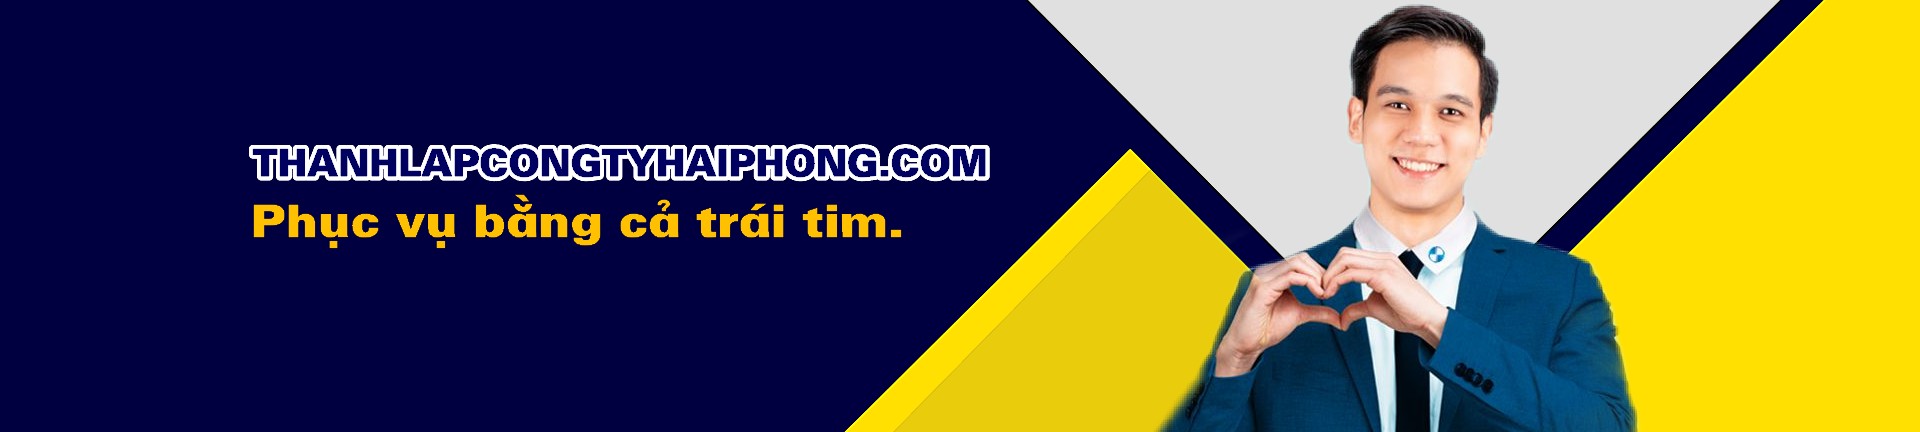 Thành lập công ty Hải Phòng, thành lập doanh nghiệp Hải Phòng - Thanhlapcongtyhaiphong.com